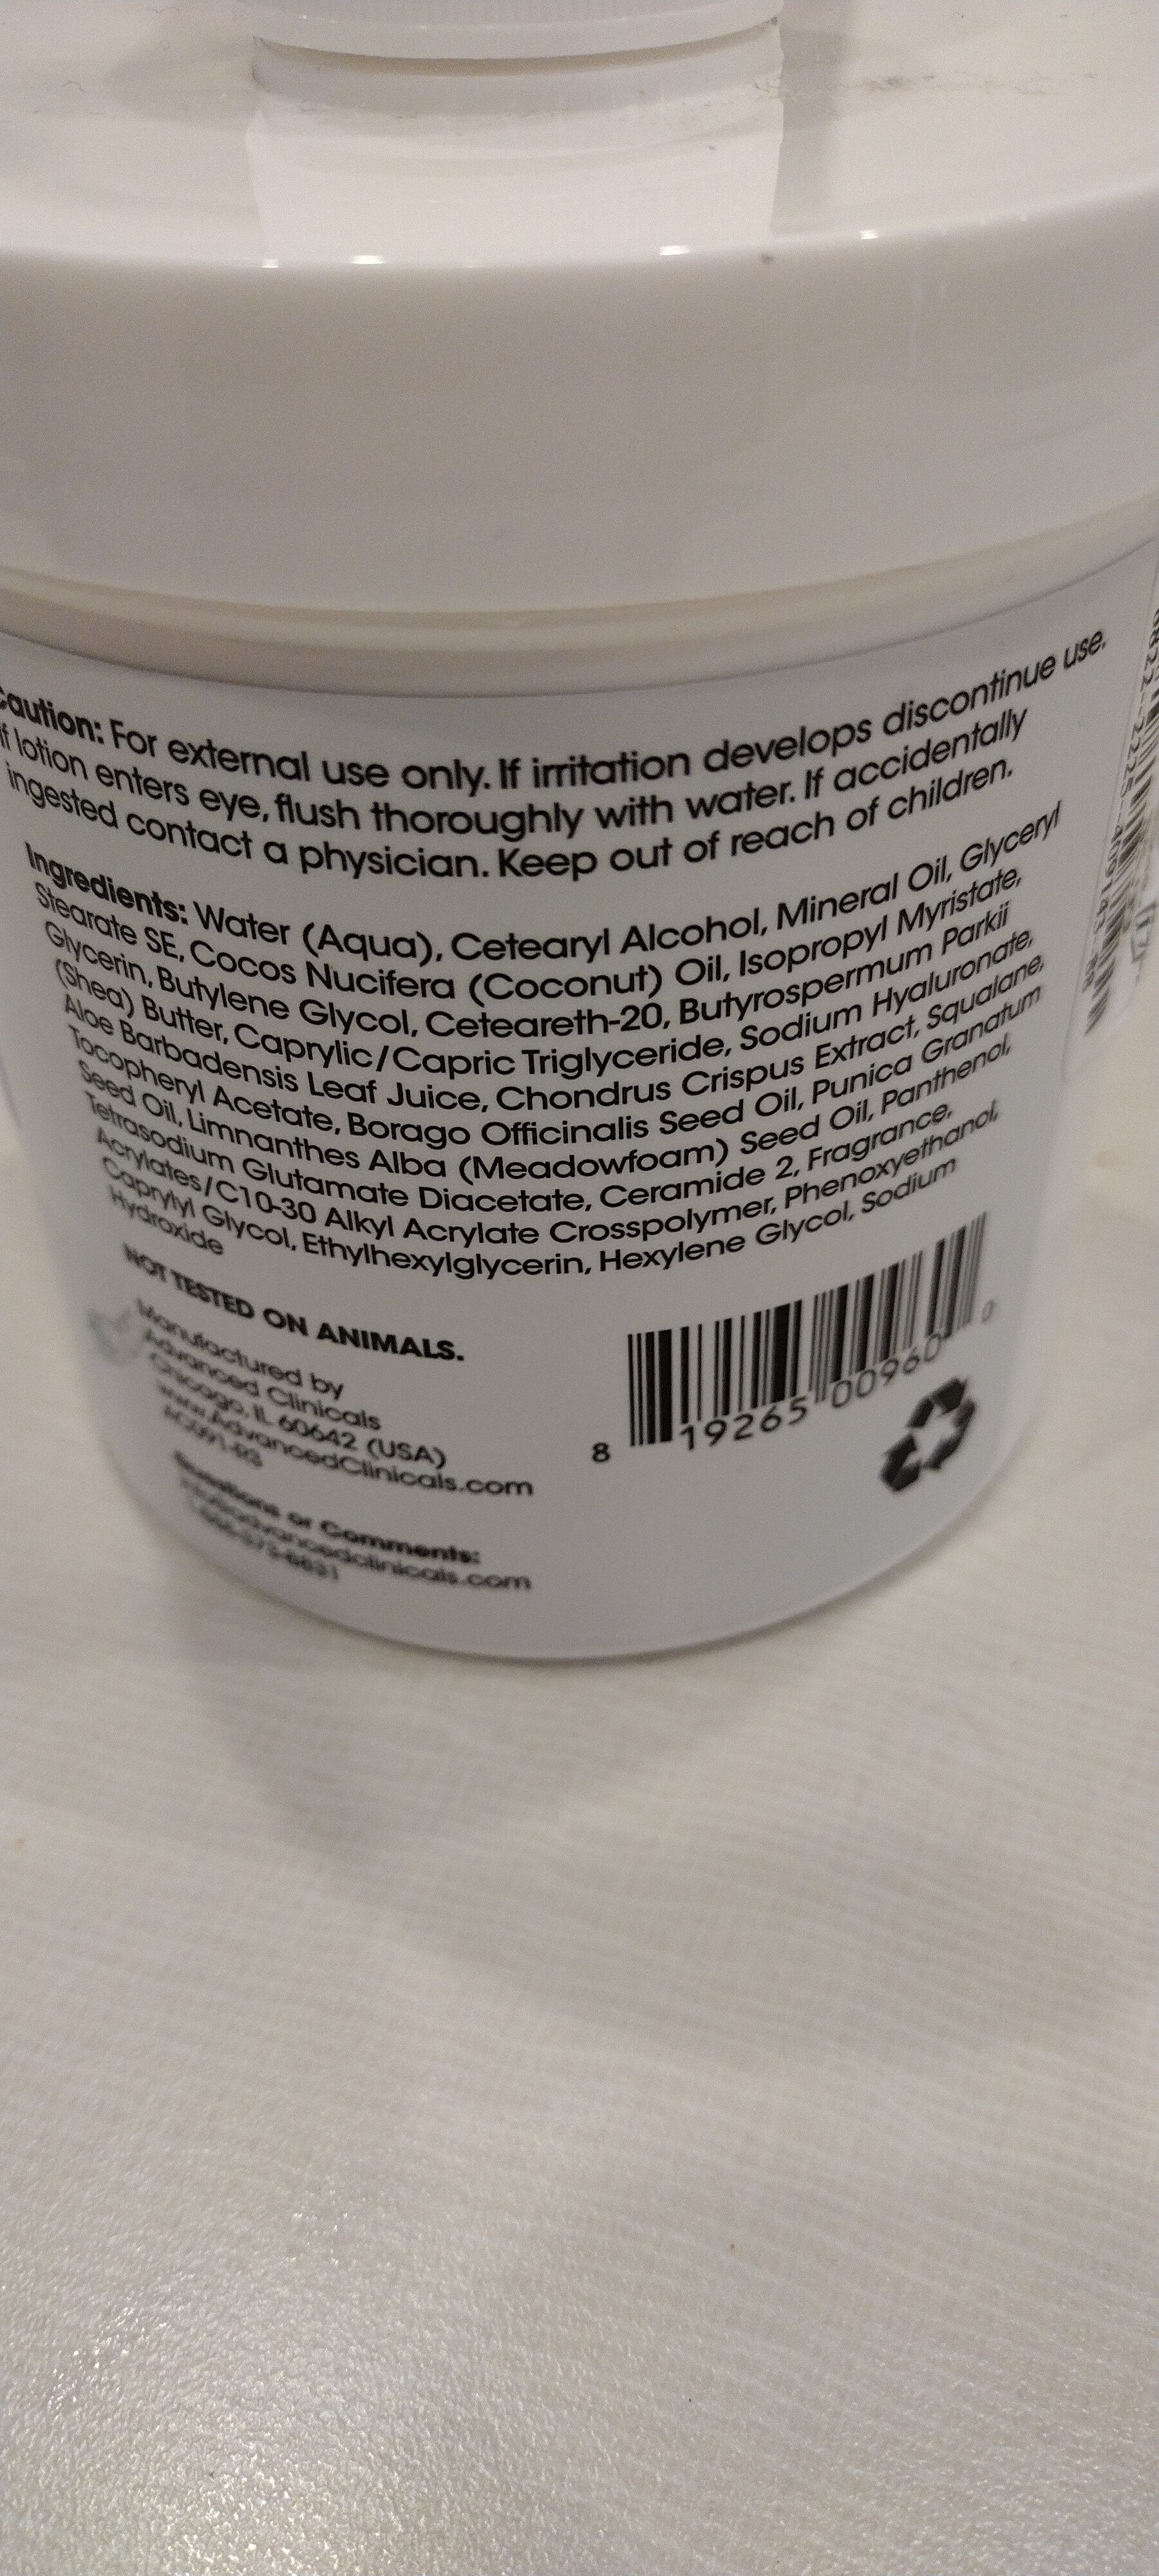 hyaluronic acid - Ingrédients - en